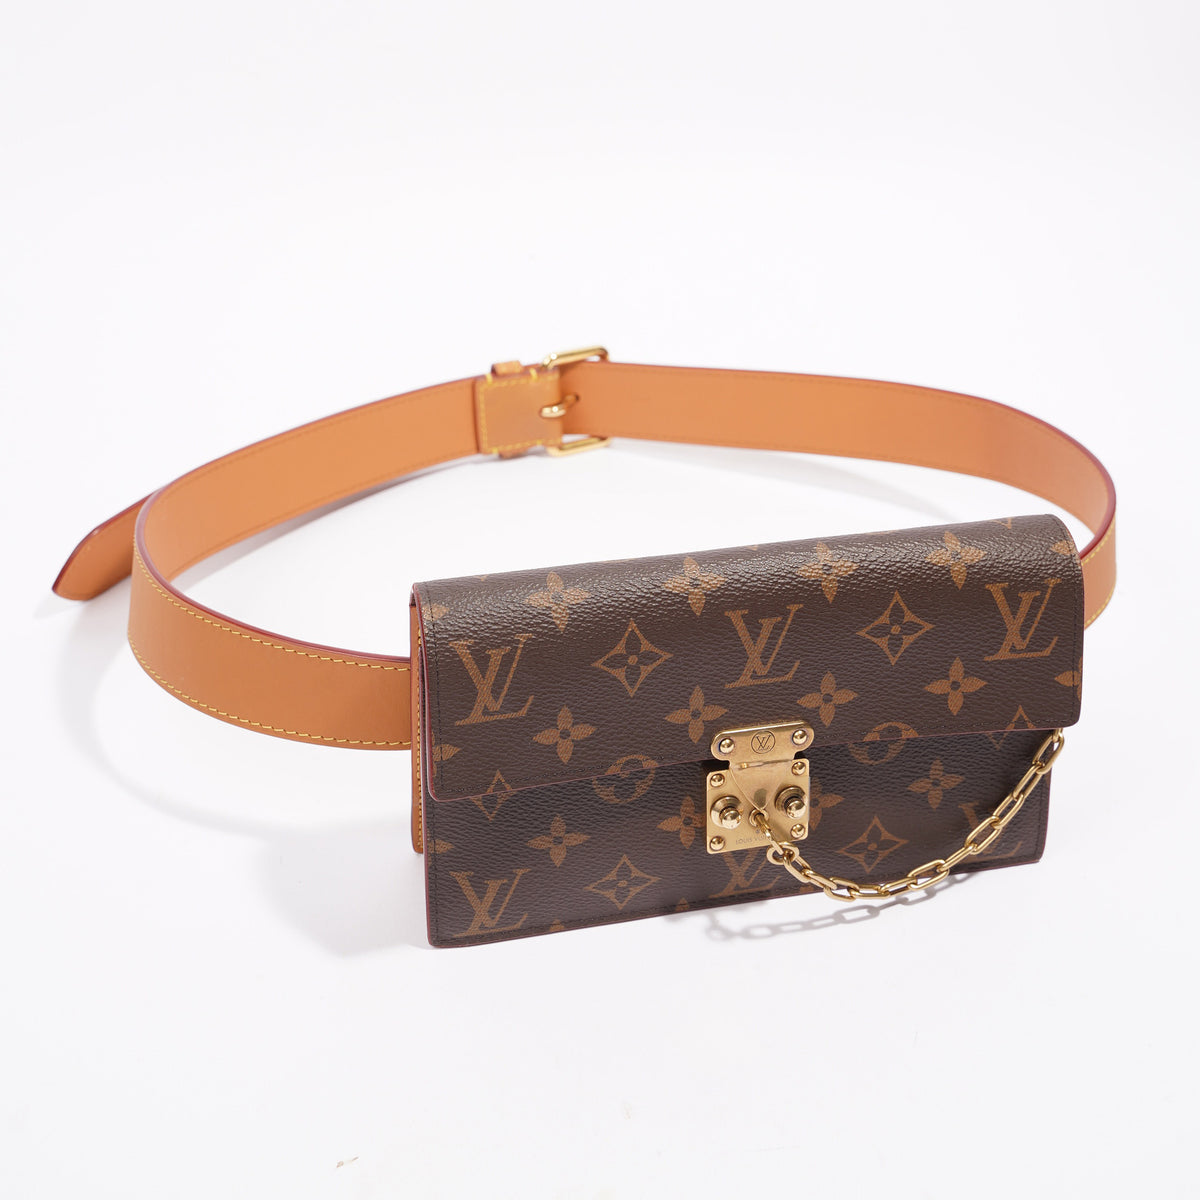 Louis Vuitton Women's Belt Bags